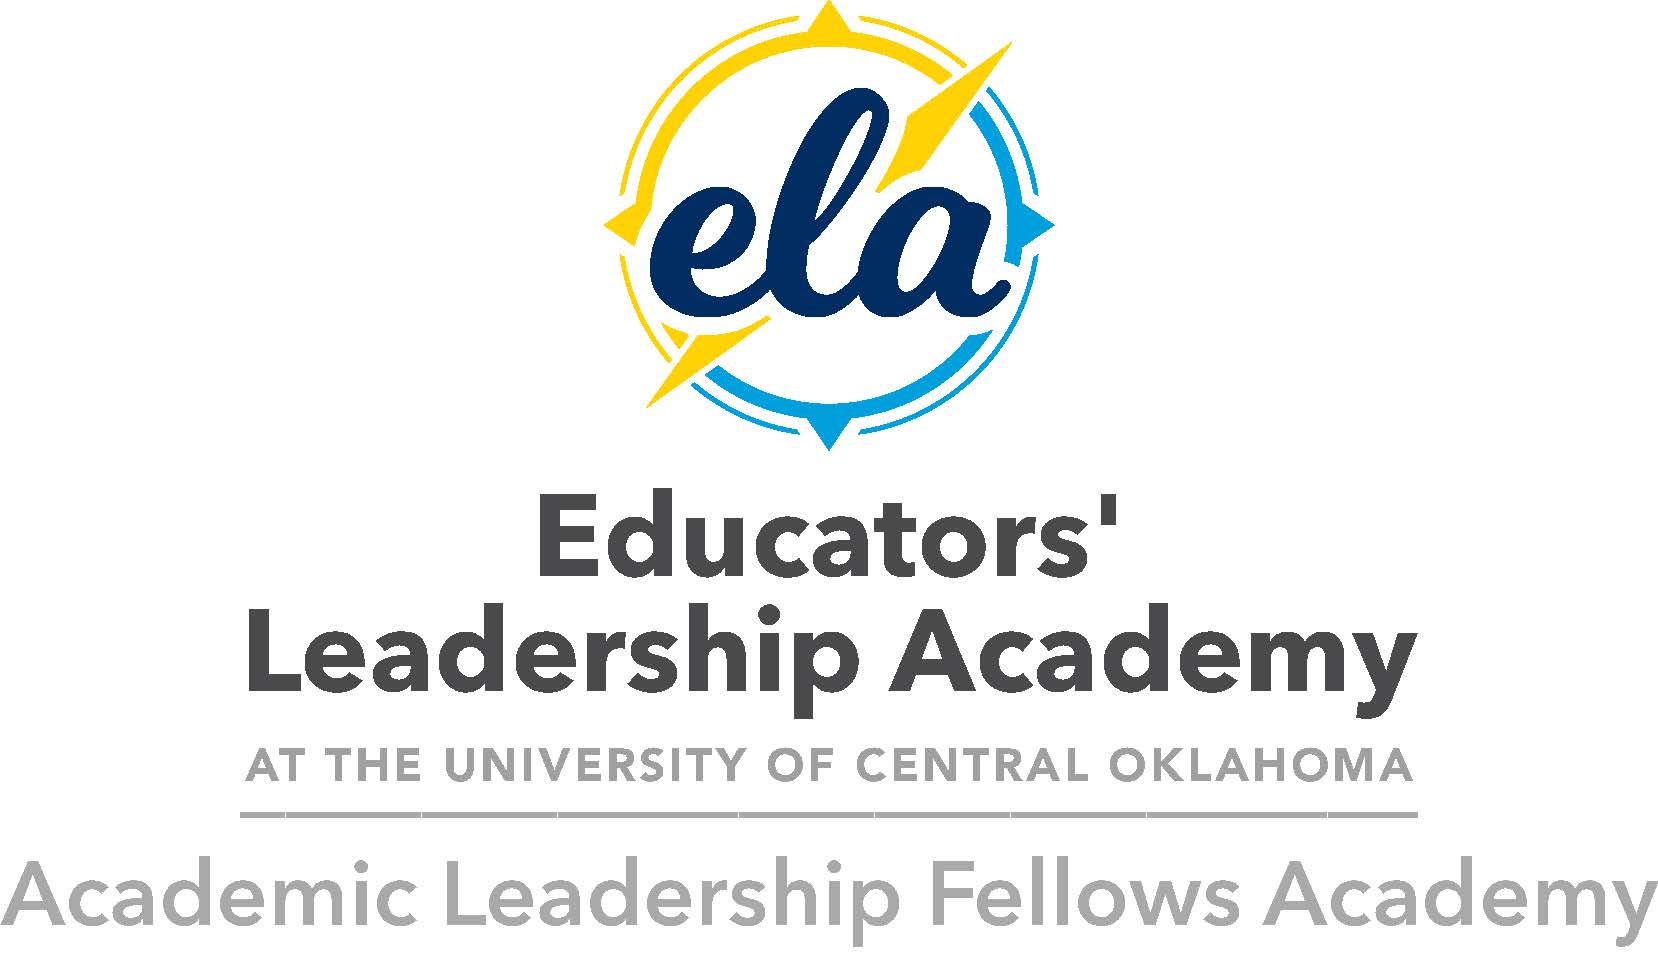 Academic Leadership Fellows Academy